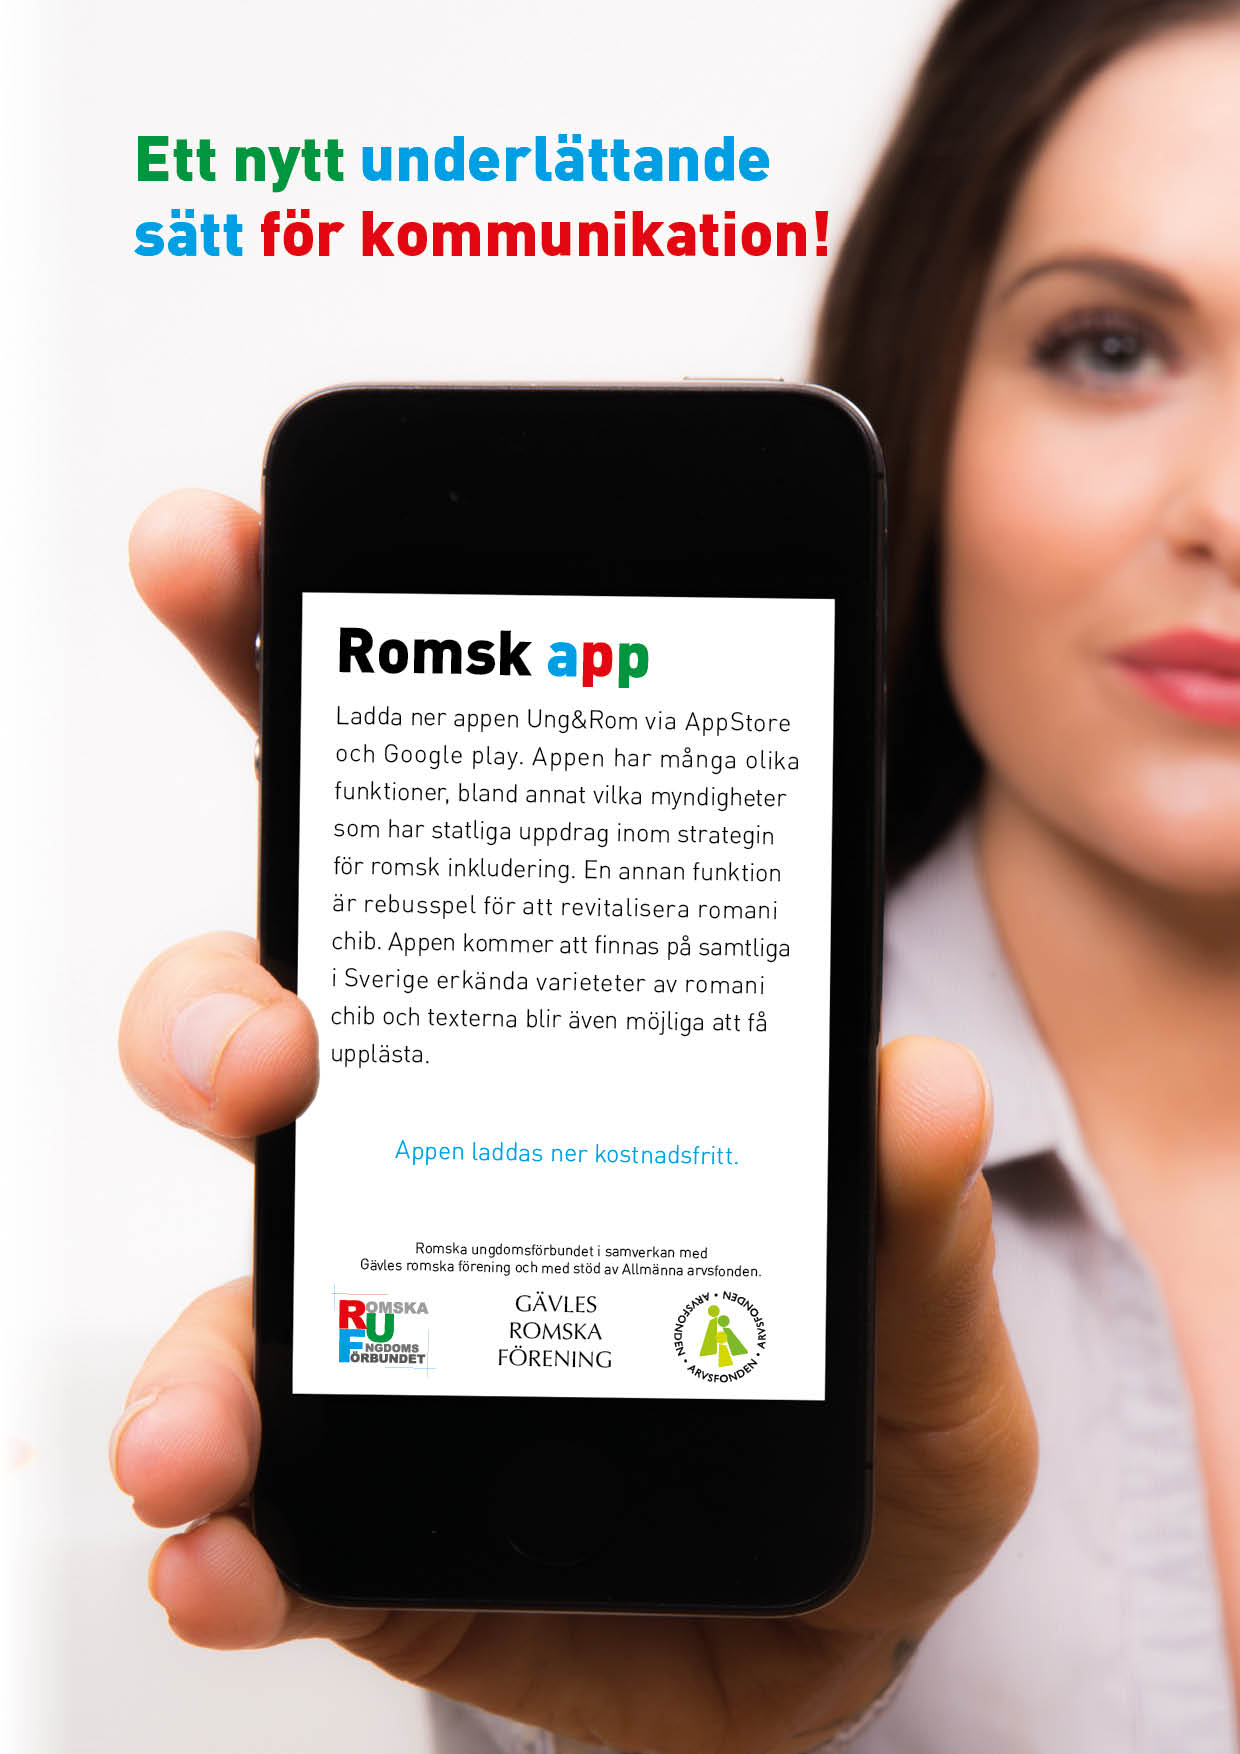 Ung & rom  - Romsk app